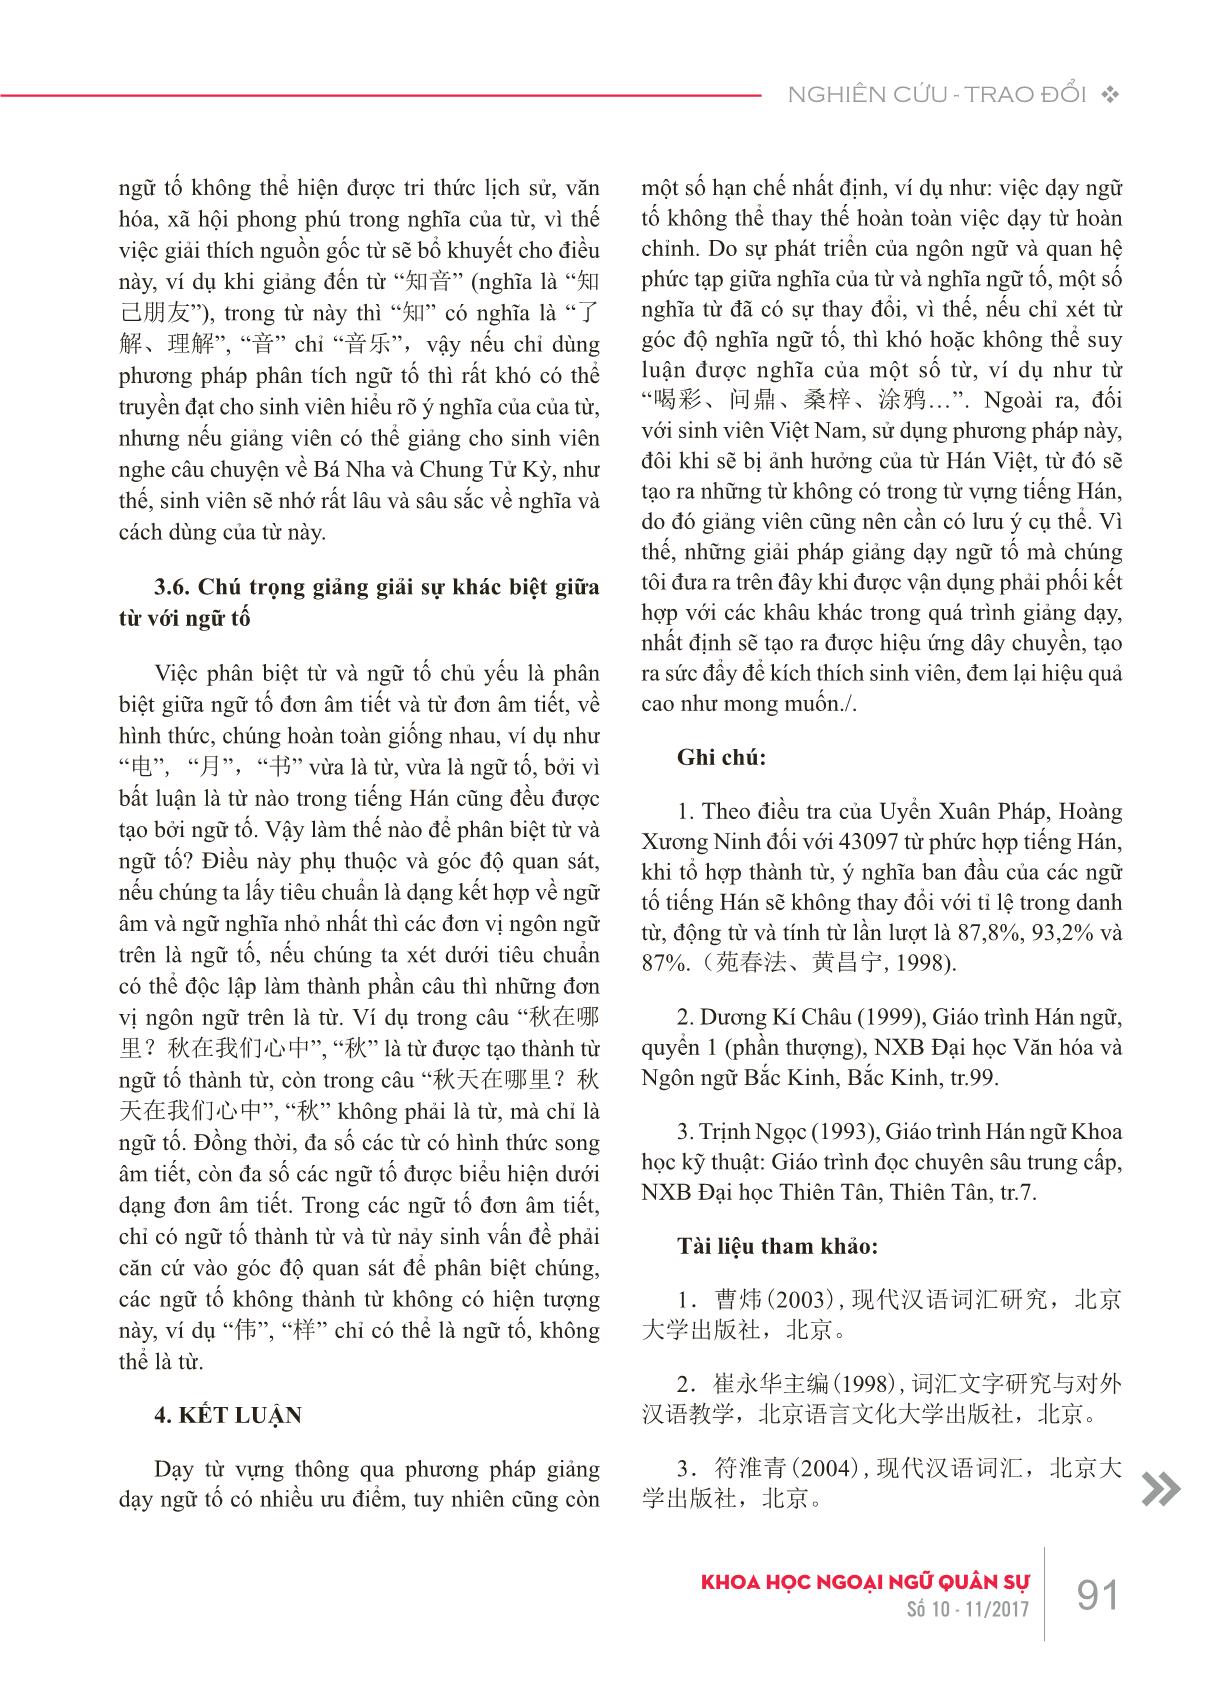 Bàn về dạy từ vựng tiếng Hán thông qua phương pháp giảng dạy ngữ tố trang 7